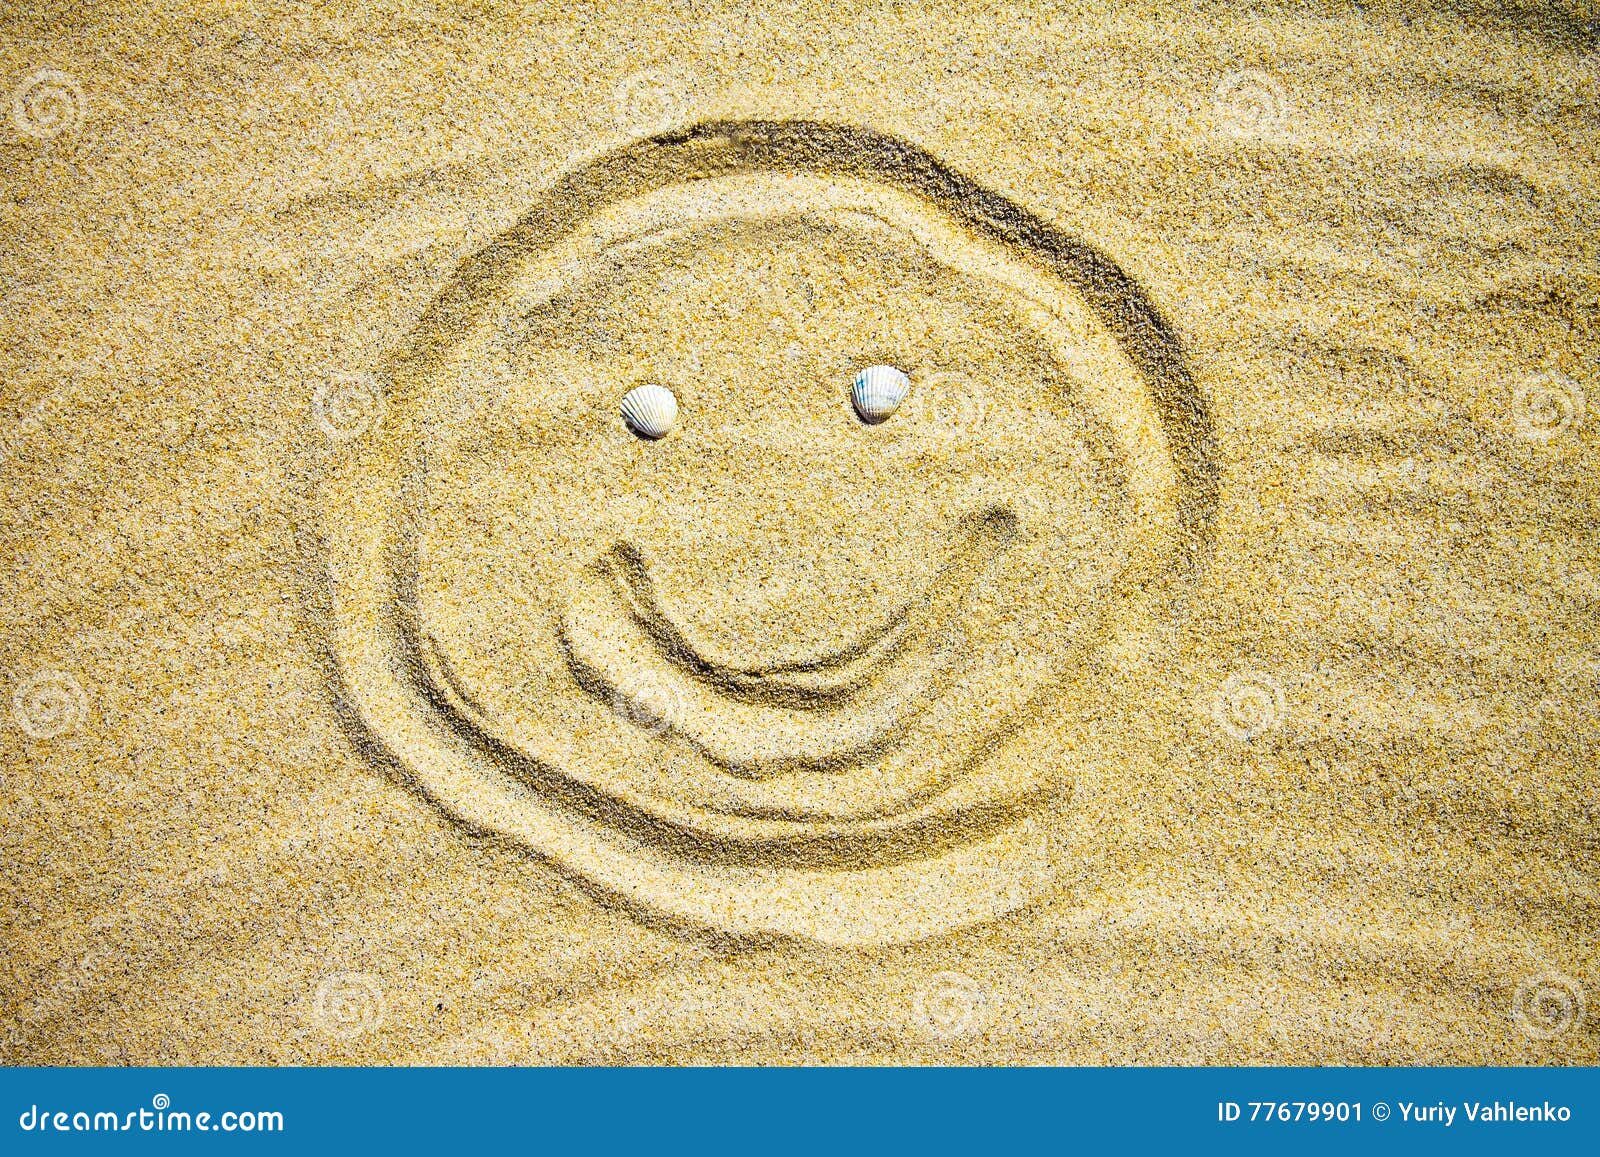 Resultado de imagen de emoticon de hombre en la playa